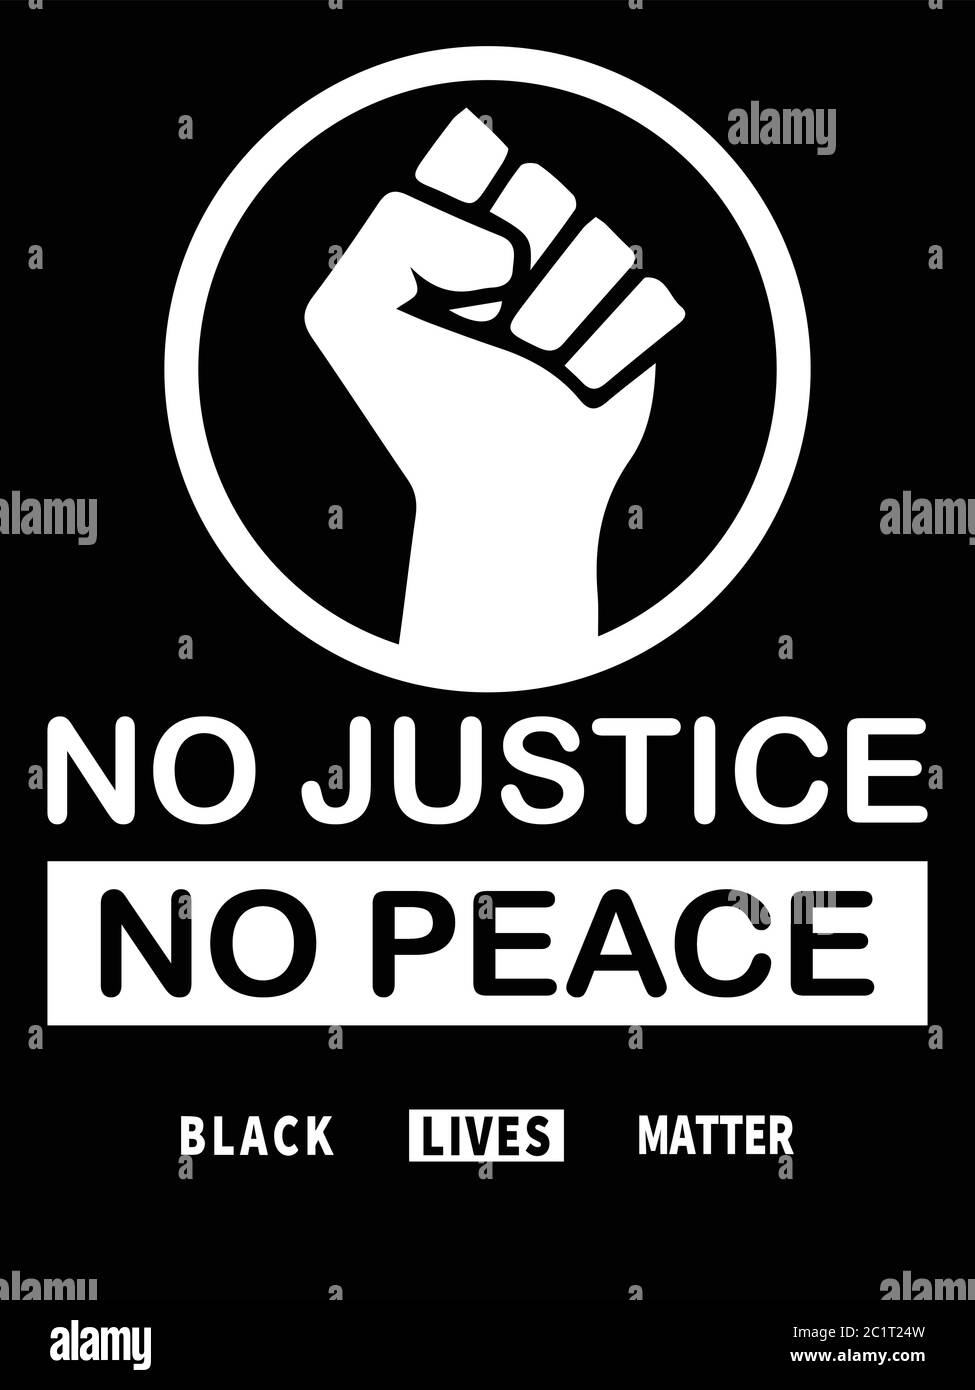 Schwarze Leben Sind Wichtig. Schwarz-weiß BLM-Abbildung zeigt No Justice No Peace mit Fäusten. EPS-Vektor Stock Vektor